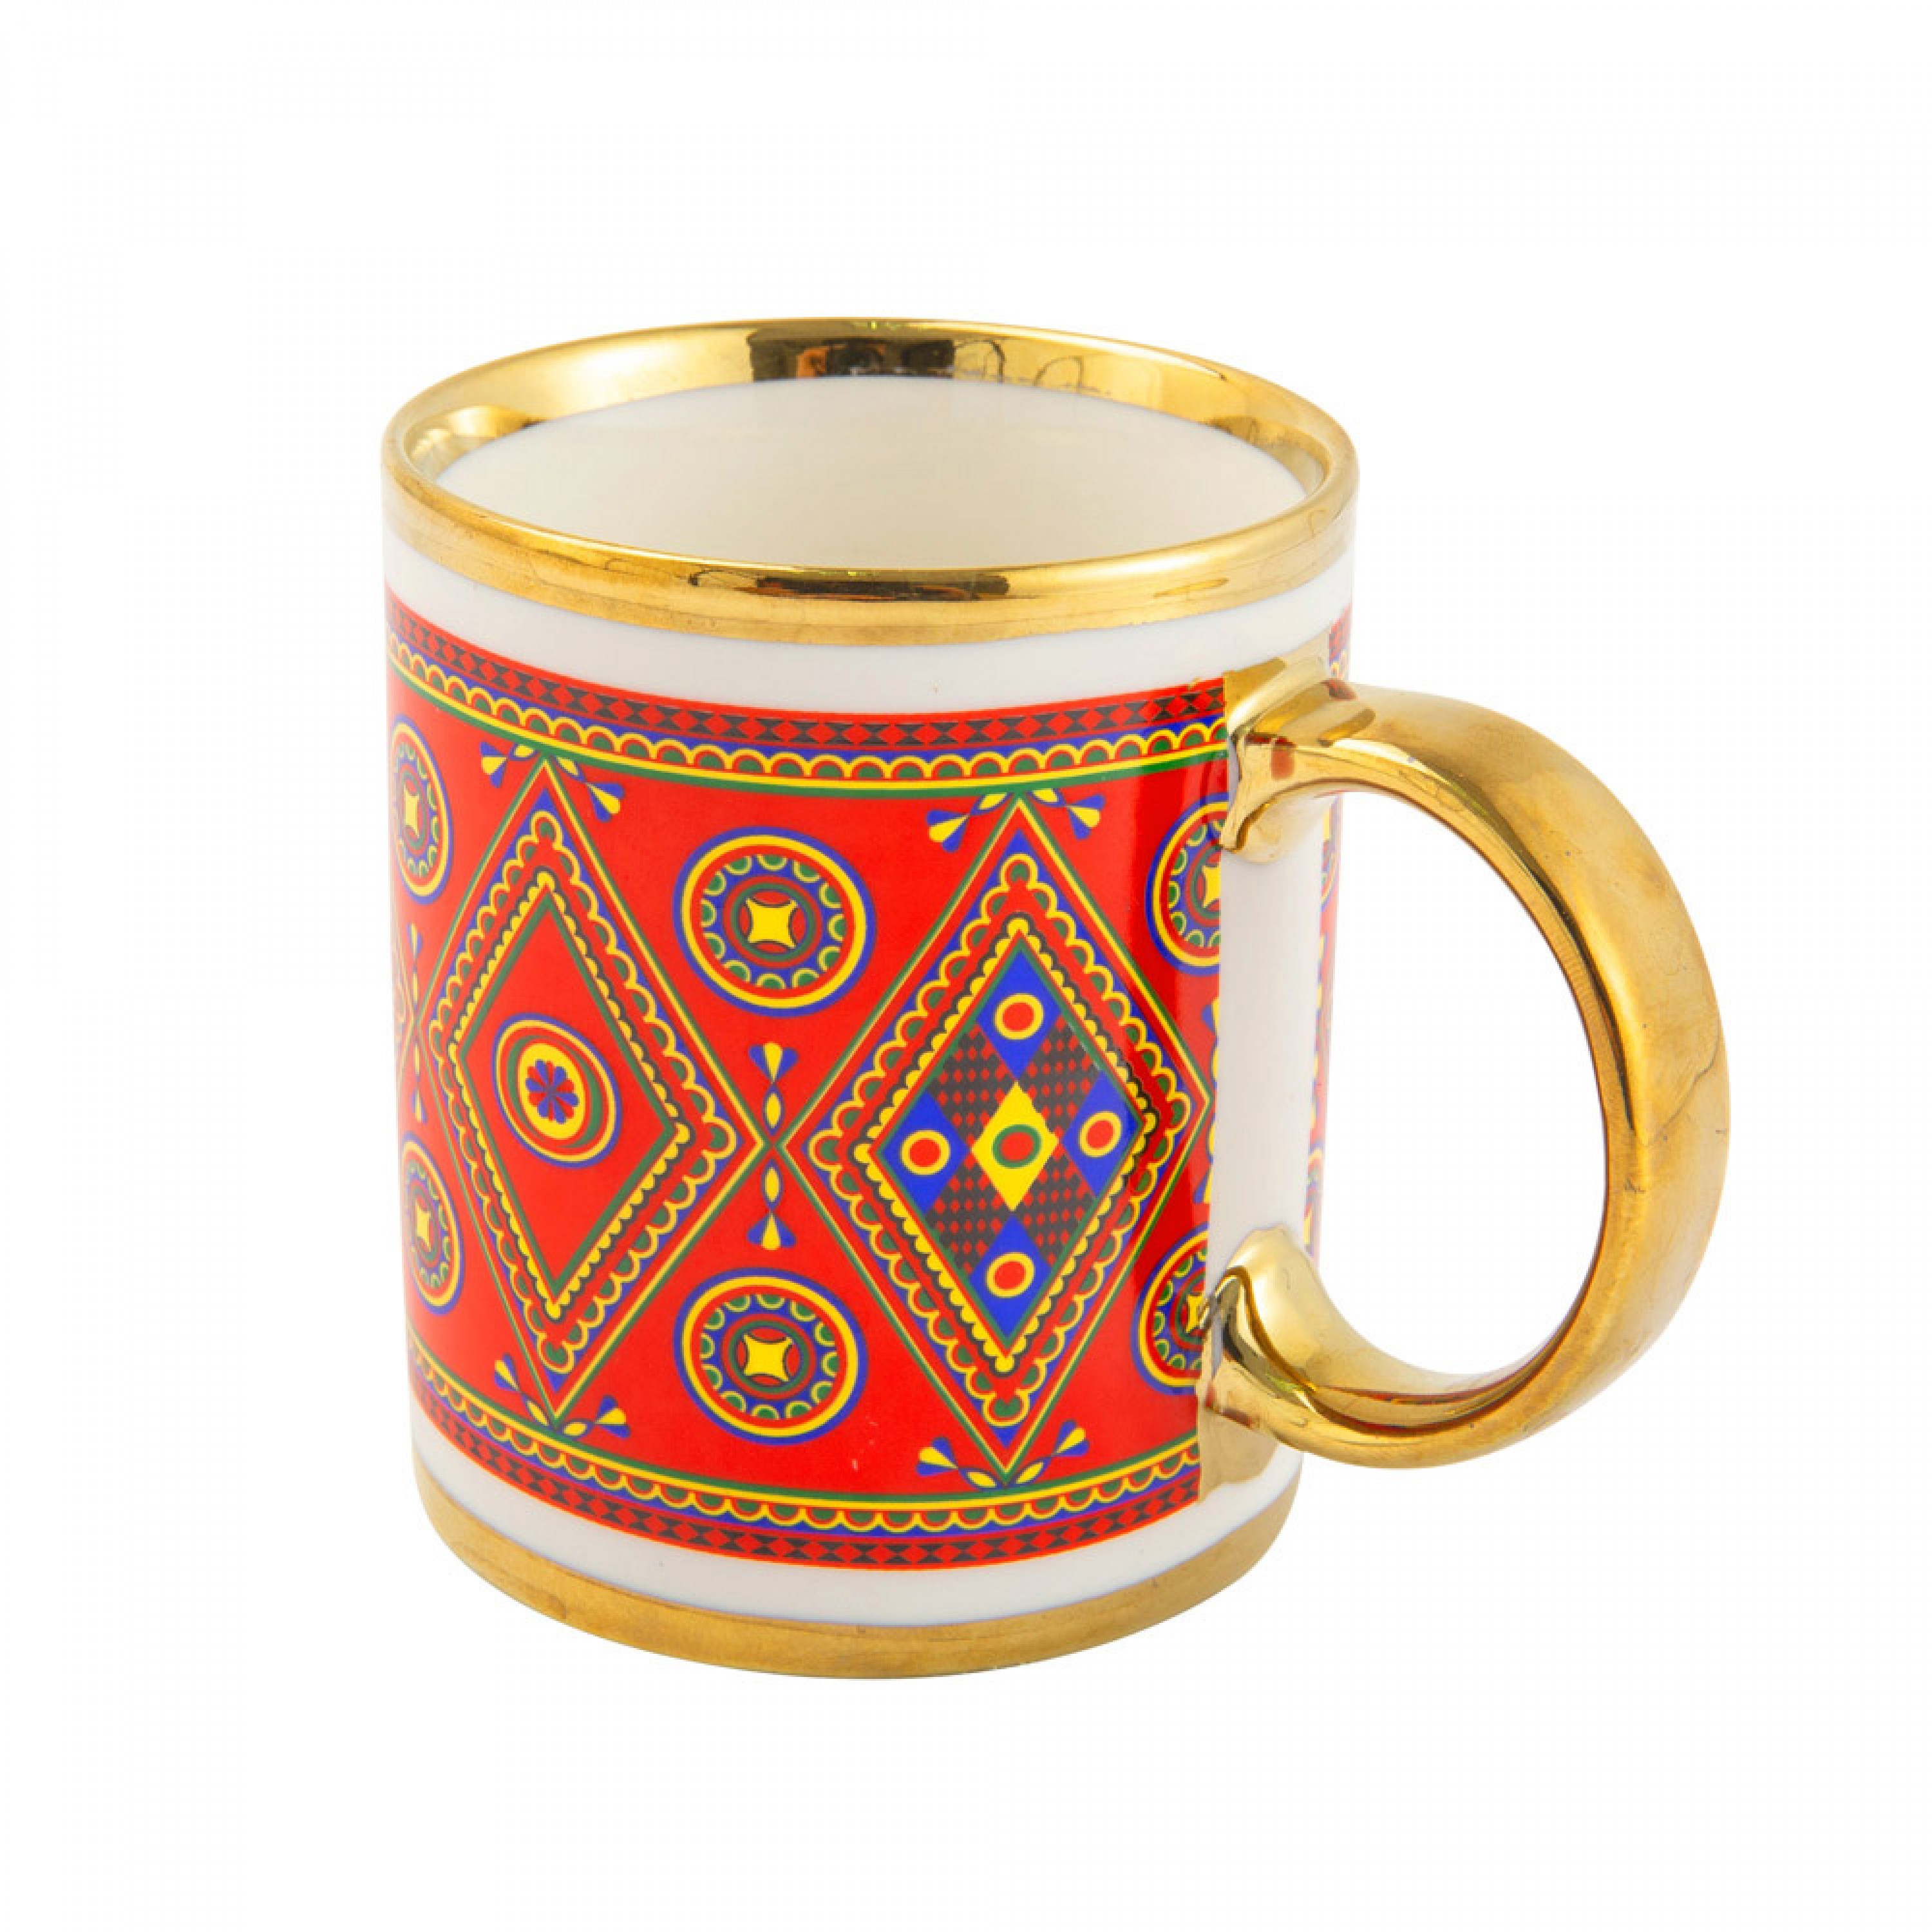 السنيدي،كوب غضار نقش نجدي،كوب قهوة للرحلات والسفر،كوب نجدي،330 مل